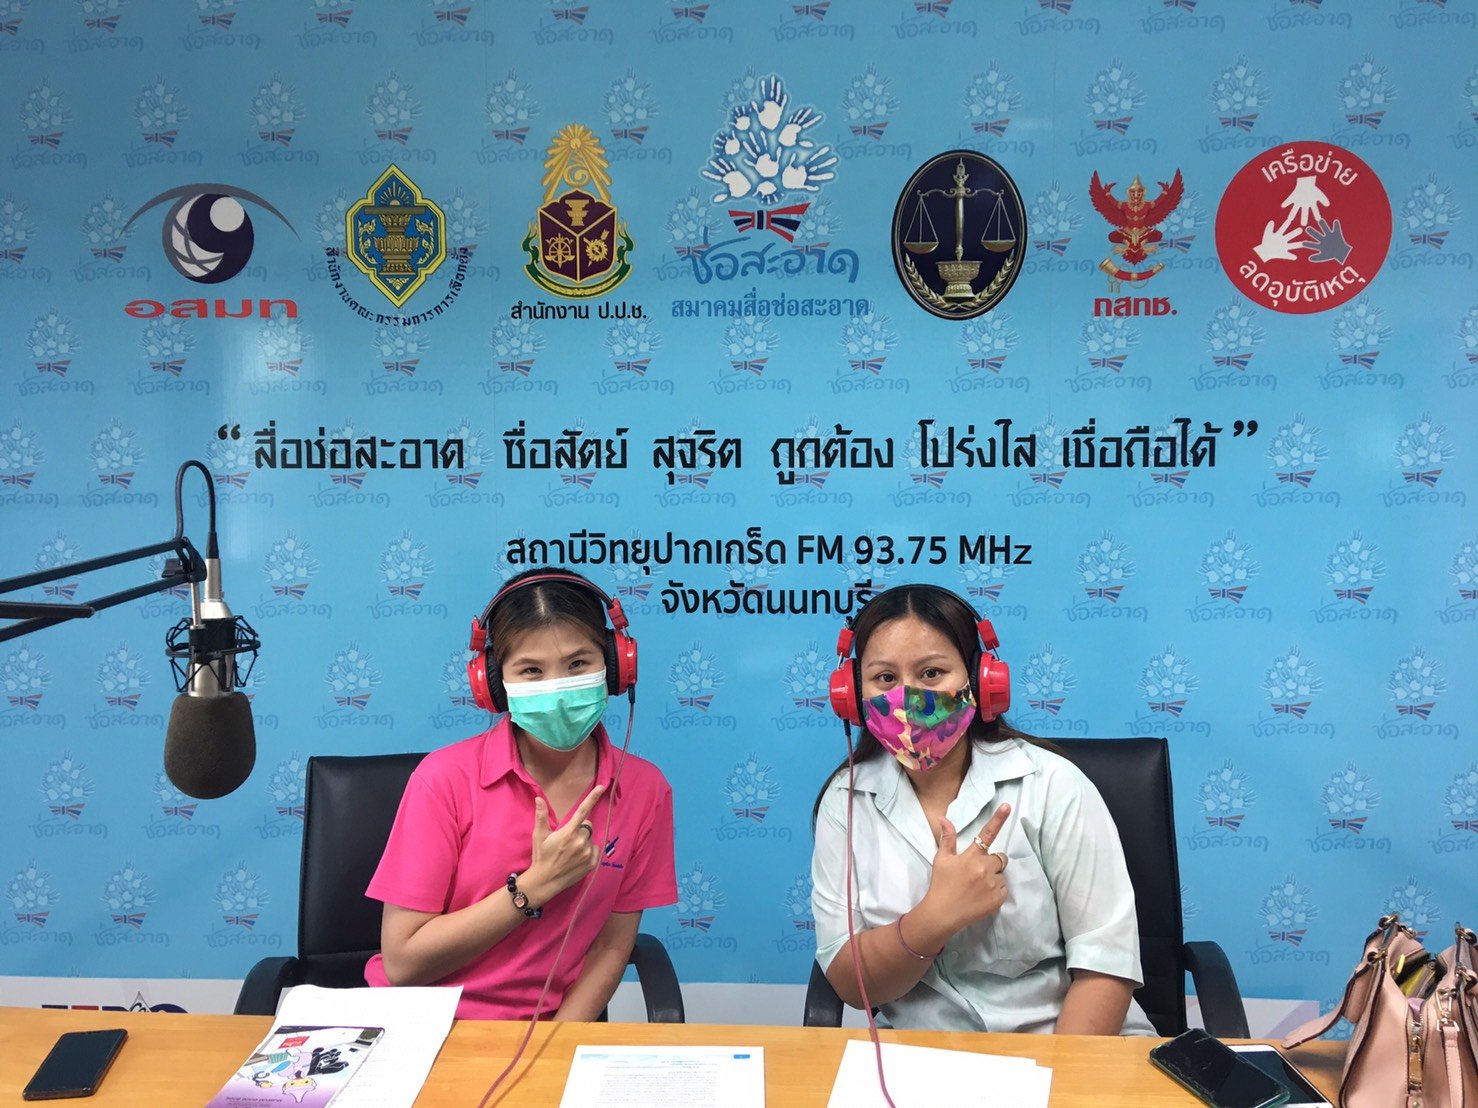 รายการ “คนไทยไม่ทนต่อการทุจริต” วันอาทิตย์ที่ 29 สิงหาคม 2564 เวลา 18.00-18.30 น.